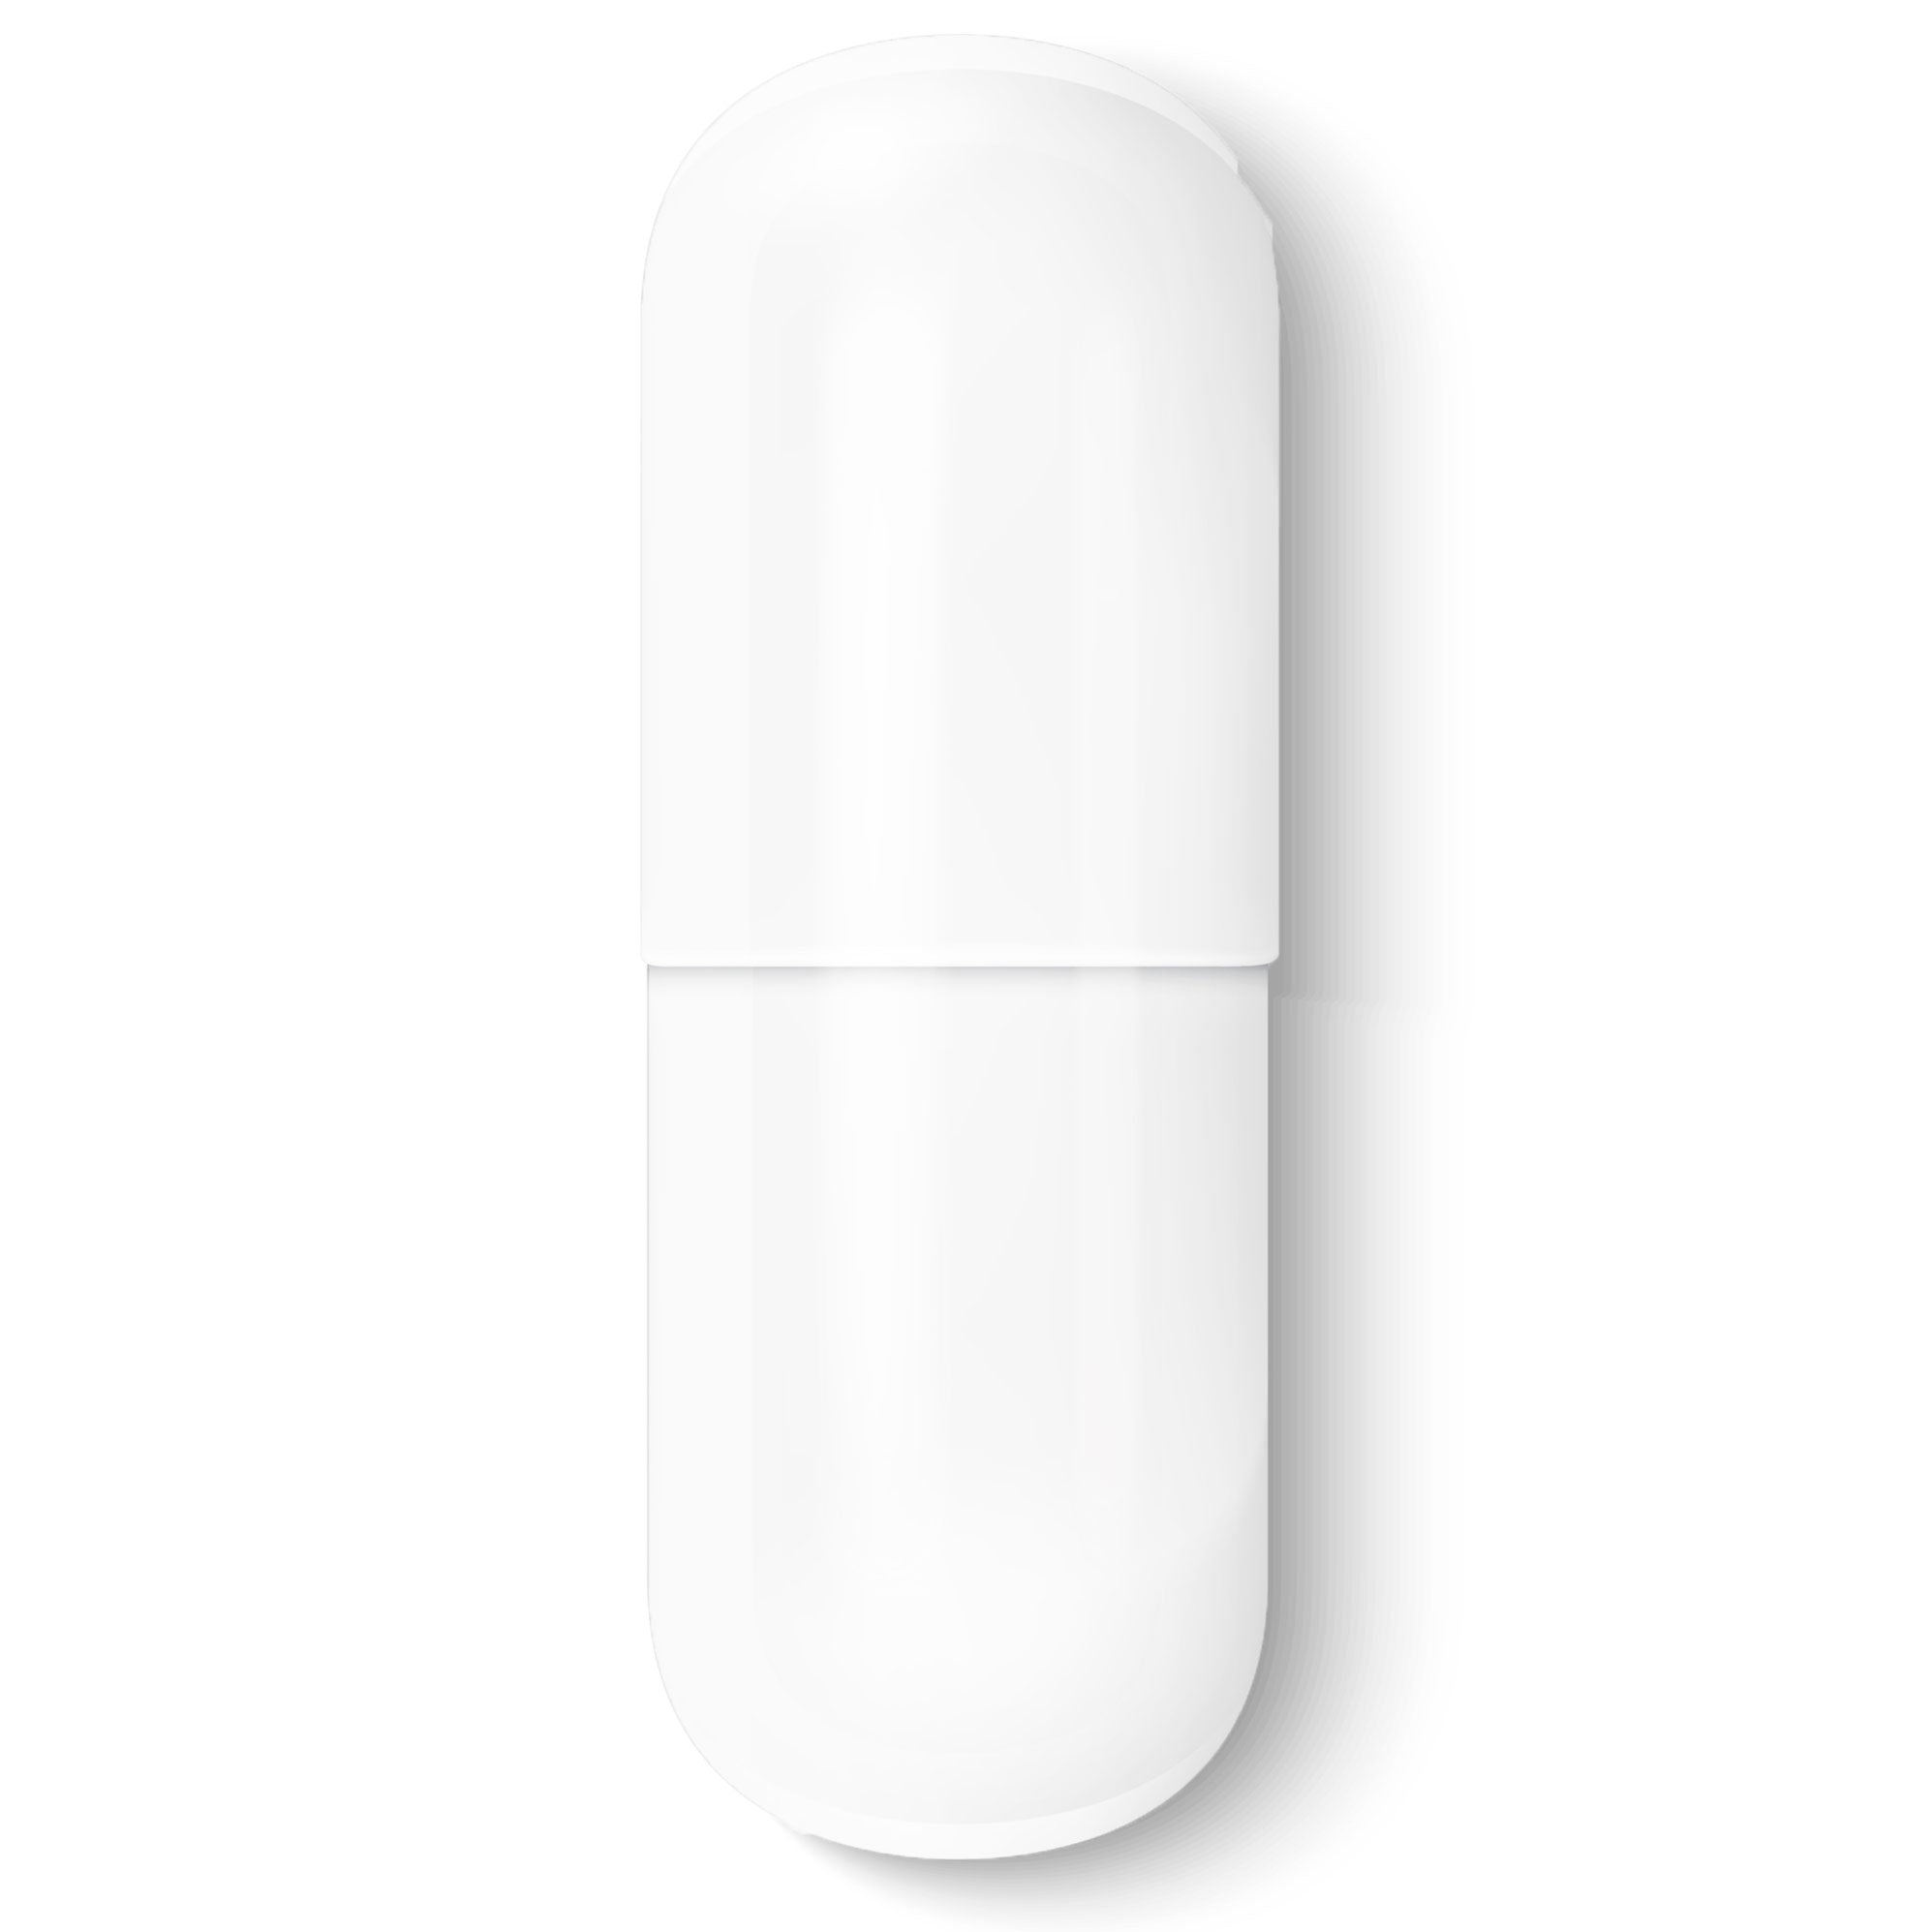 Size #1-White/White - Gelatin Capsules